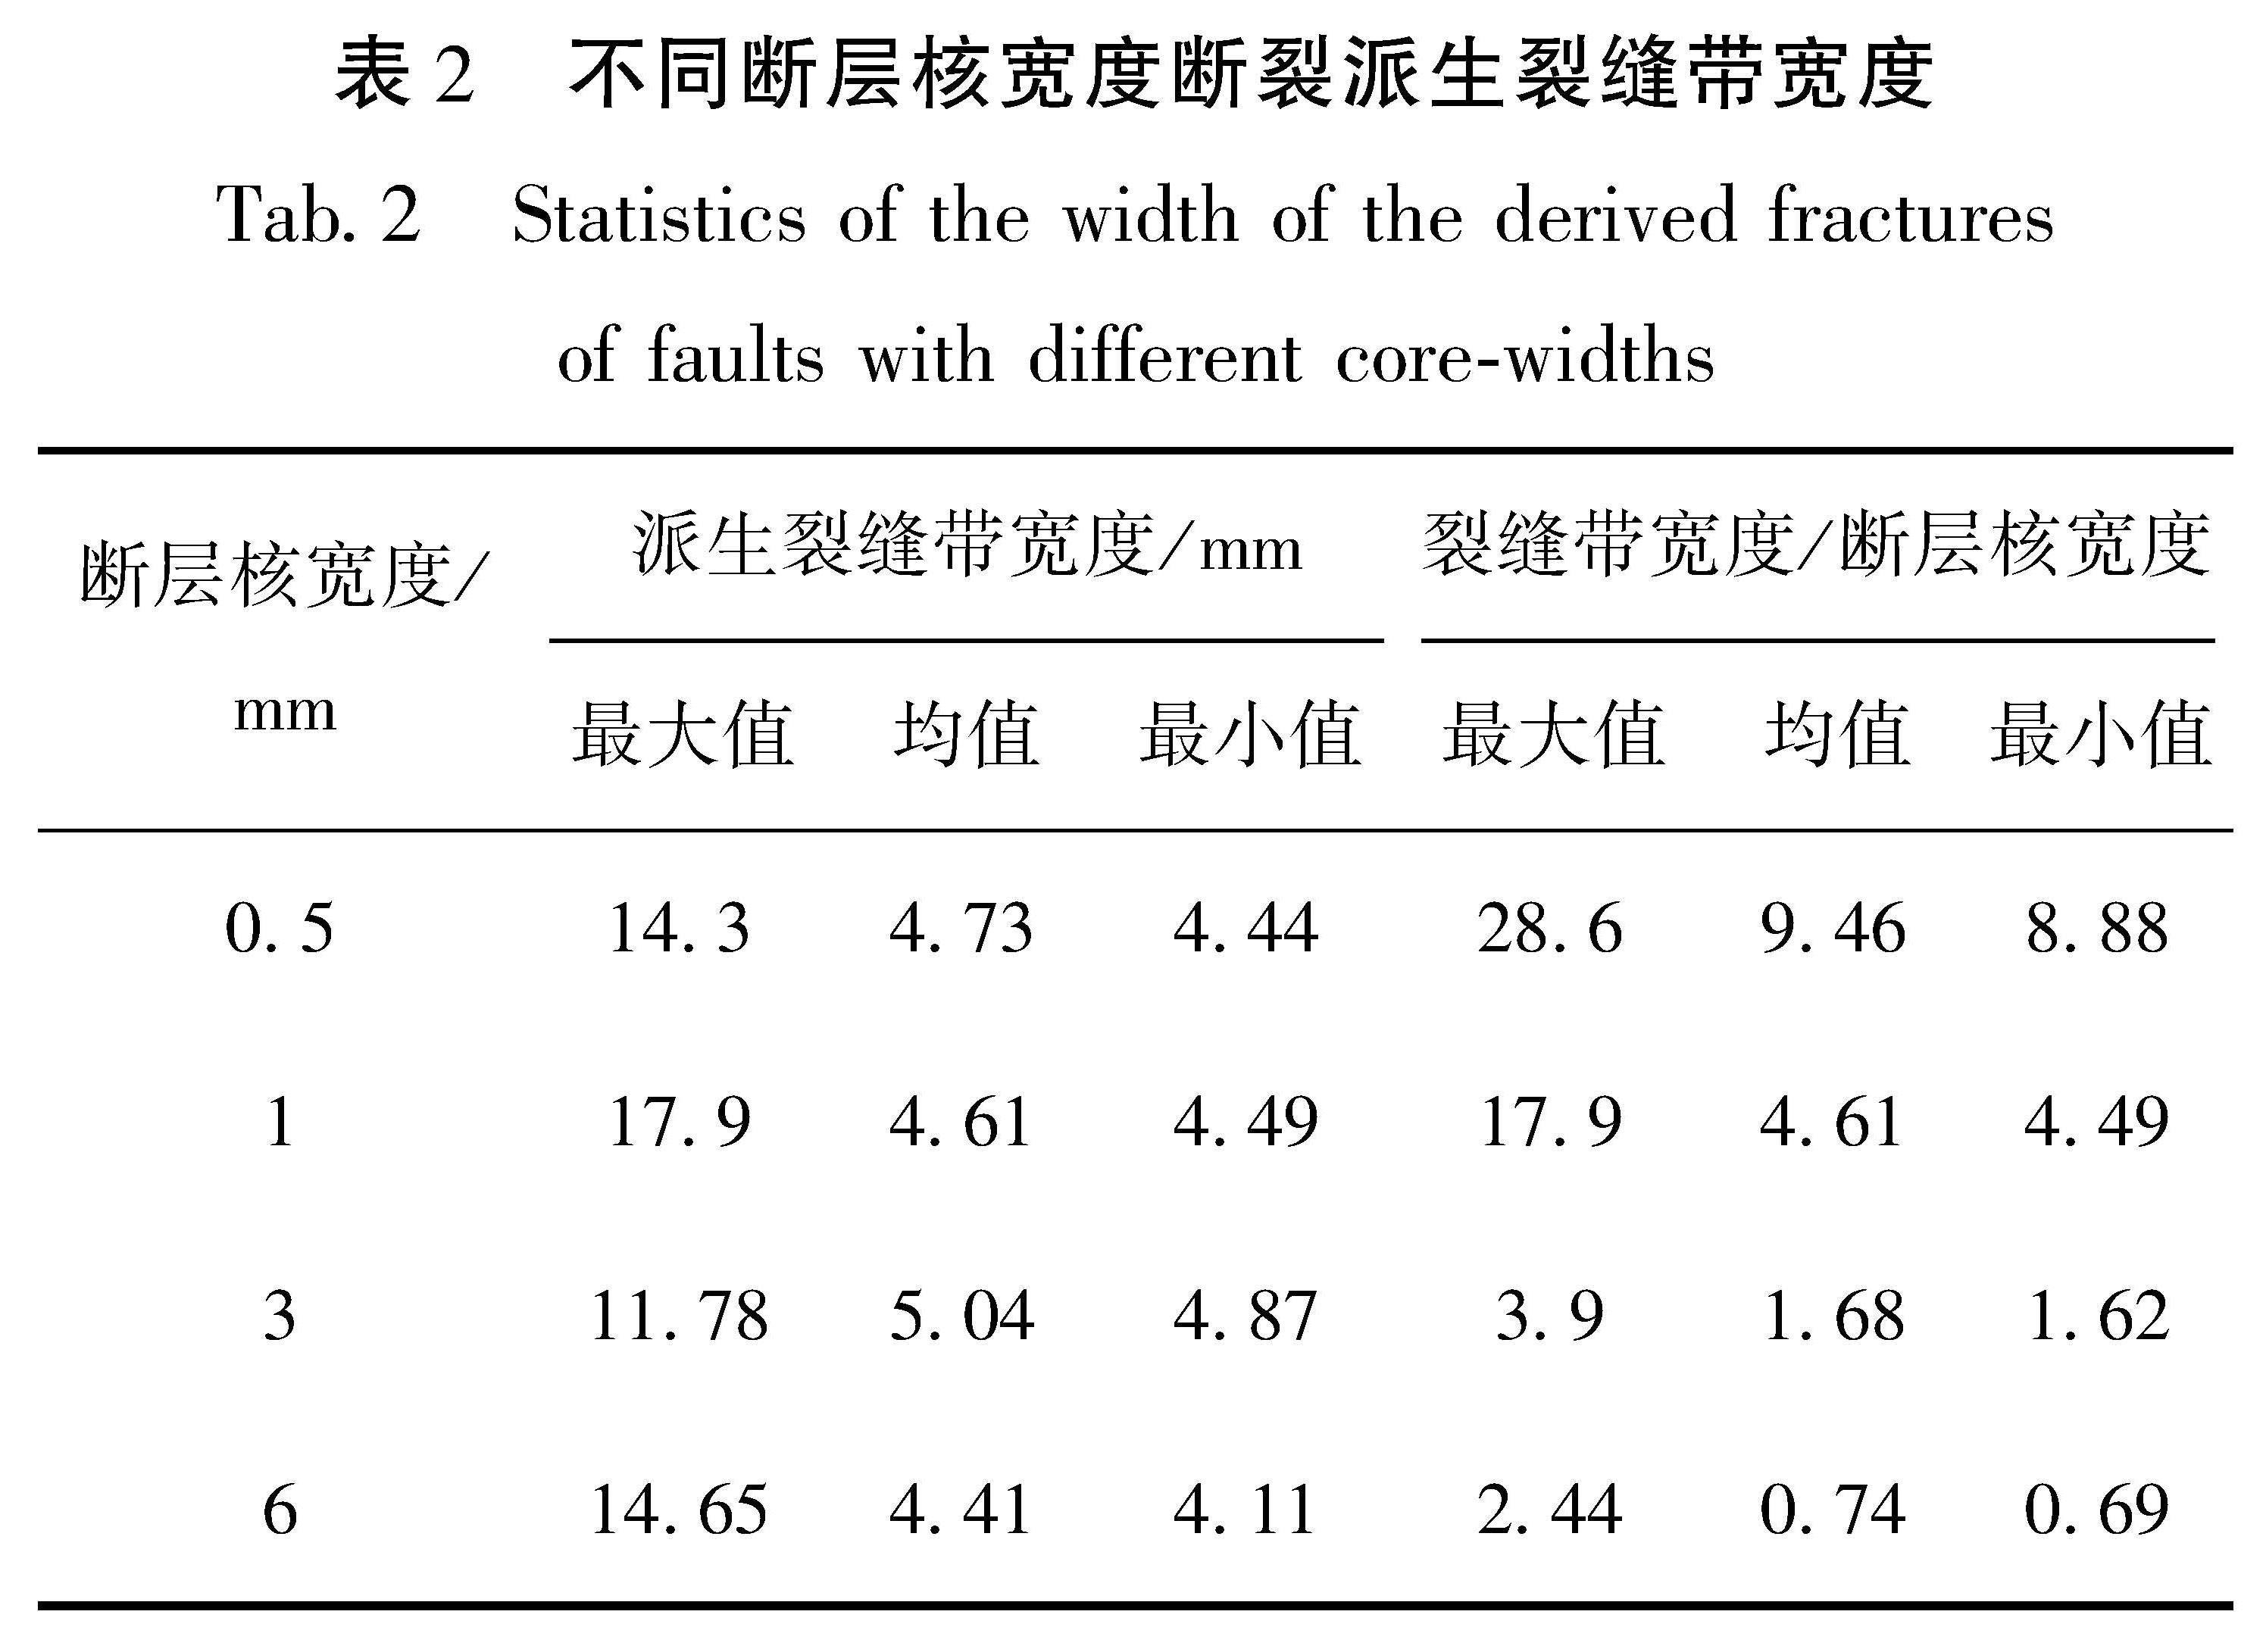 表2 不同断层核宽度断裂派生裂缝带宽度<br/>Tab.2 Statistics of the width of the derived fractures of faults with different core-widths